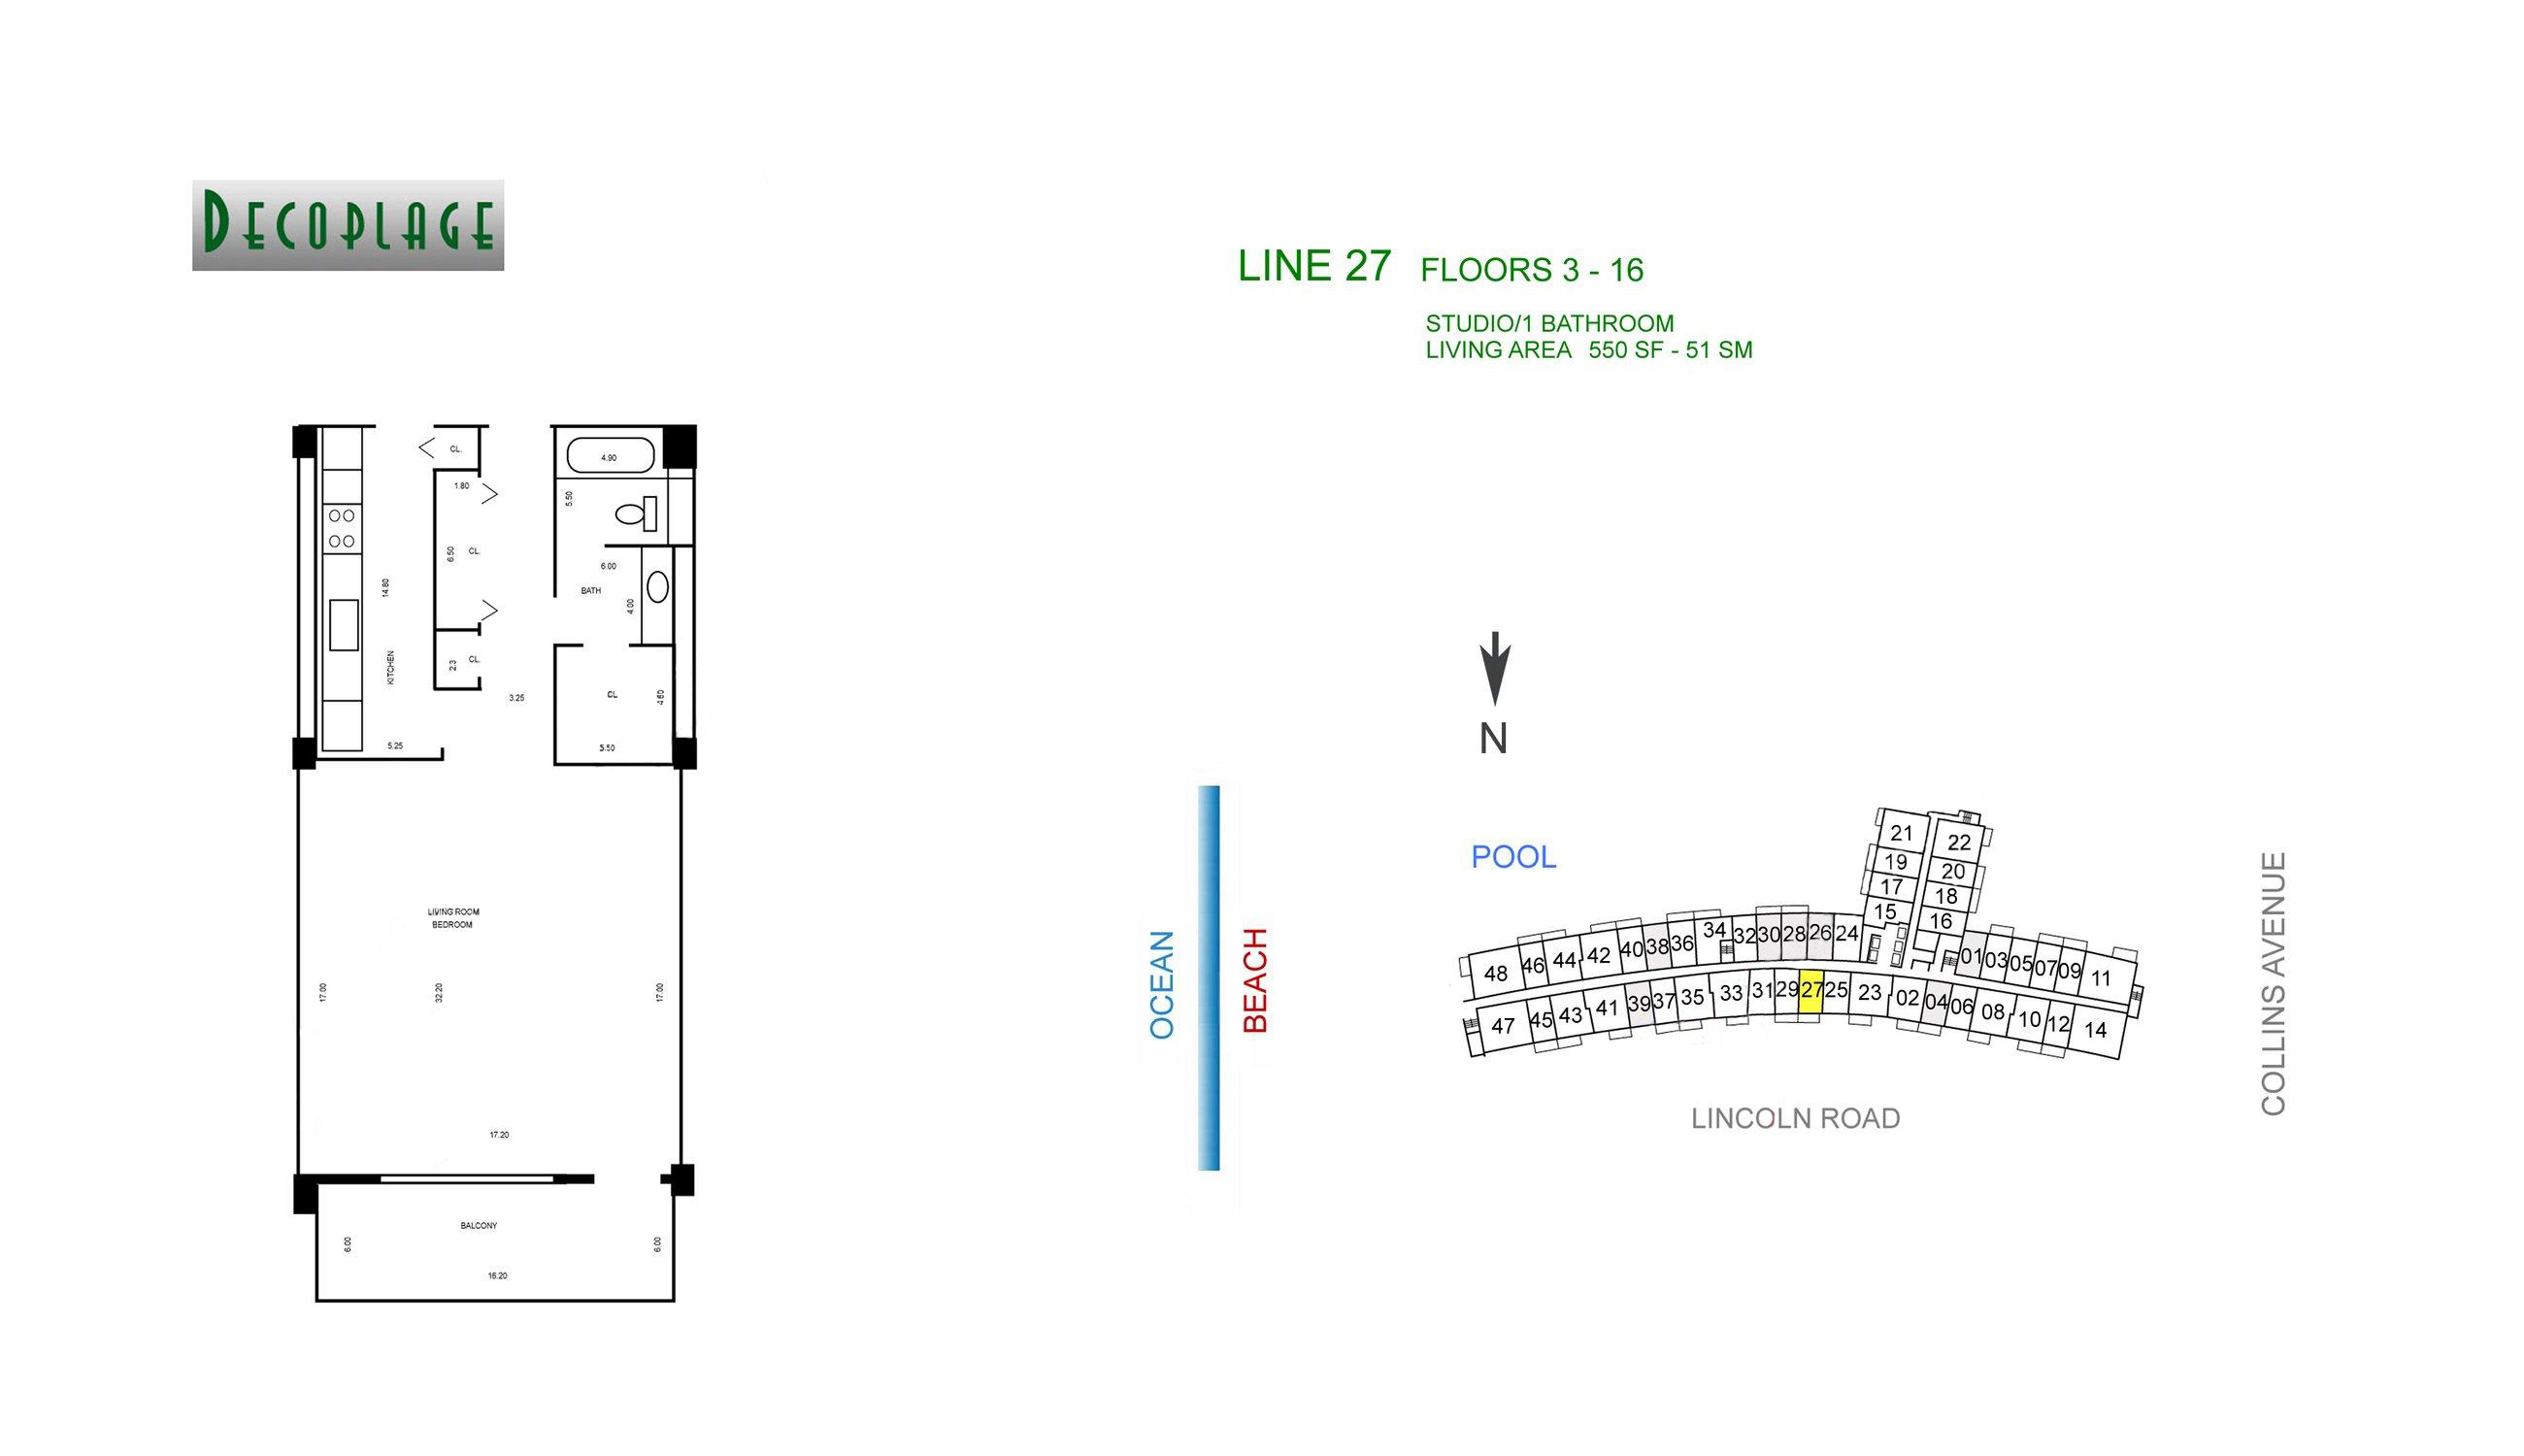 Decoplage Lines 27 Floors 3-16